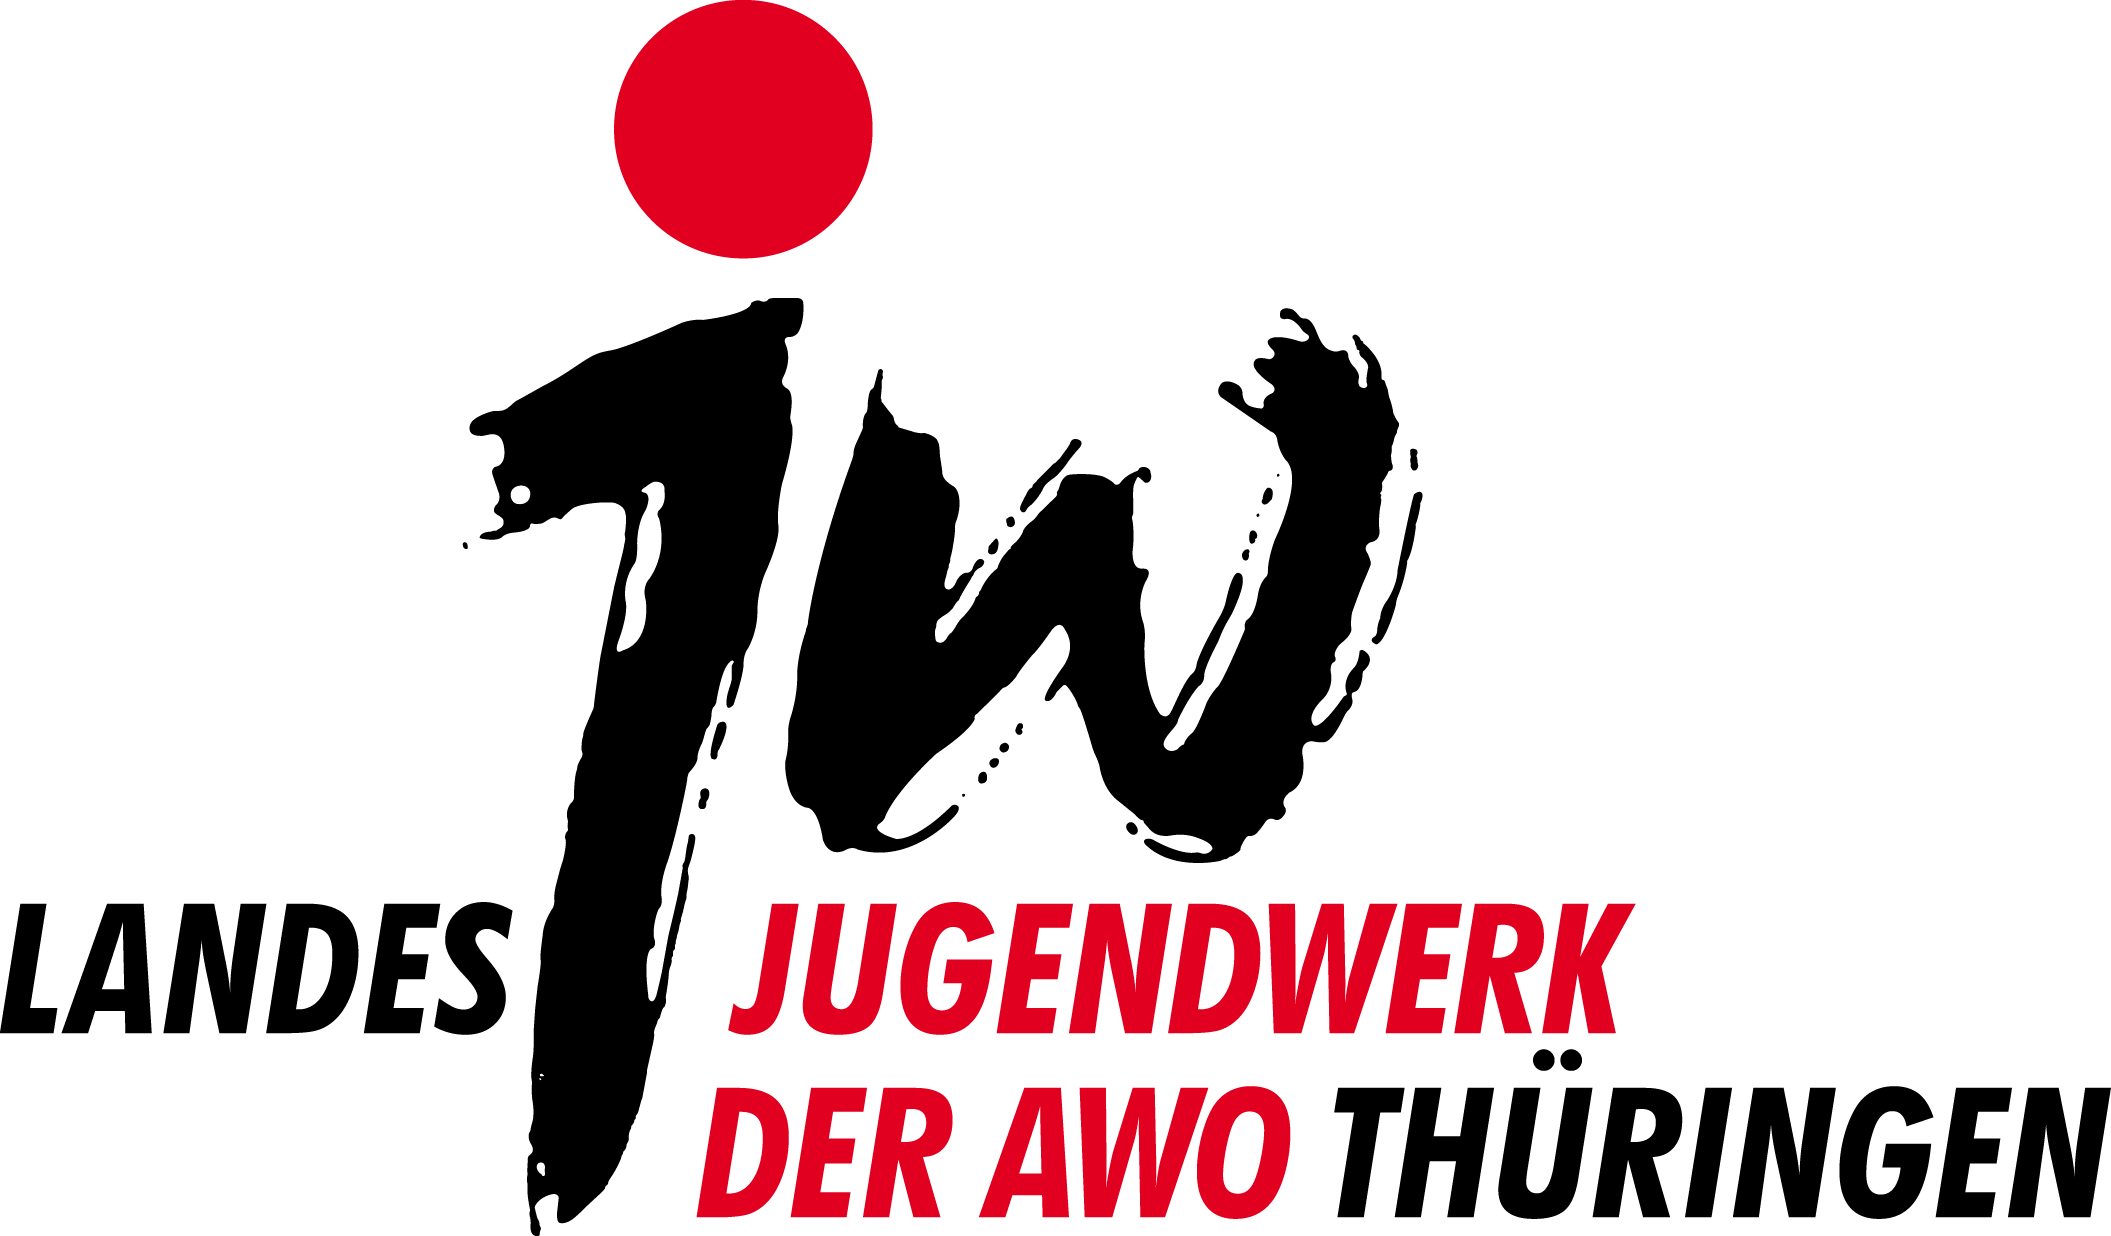 Landesjugendwerk der AWO Thüringen 